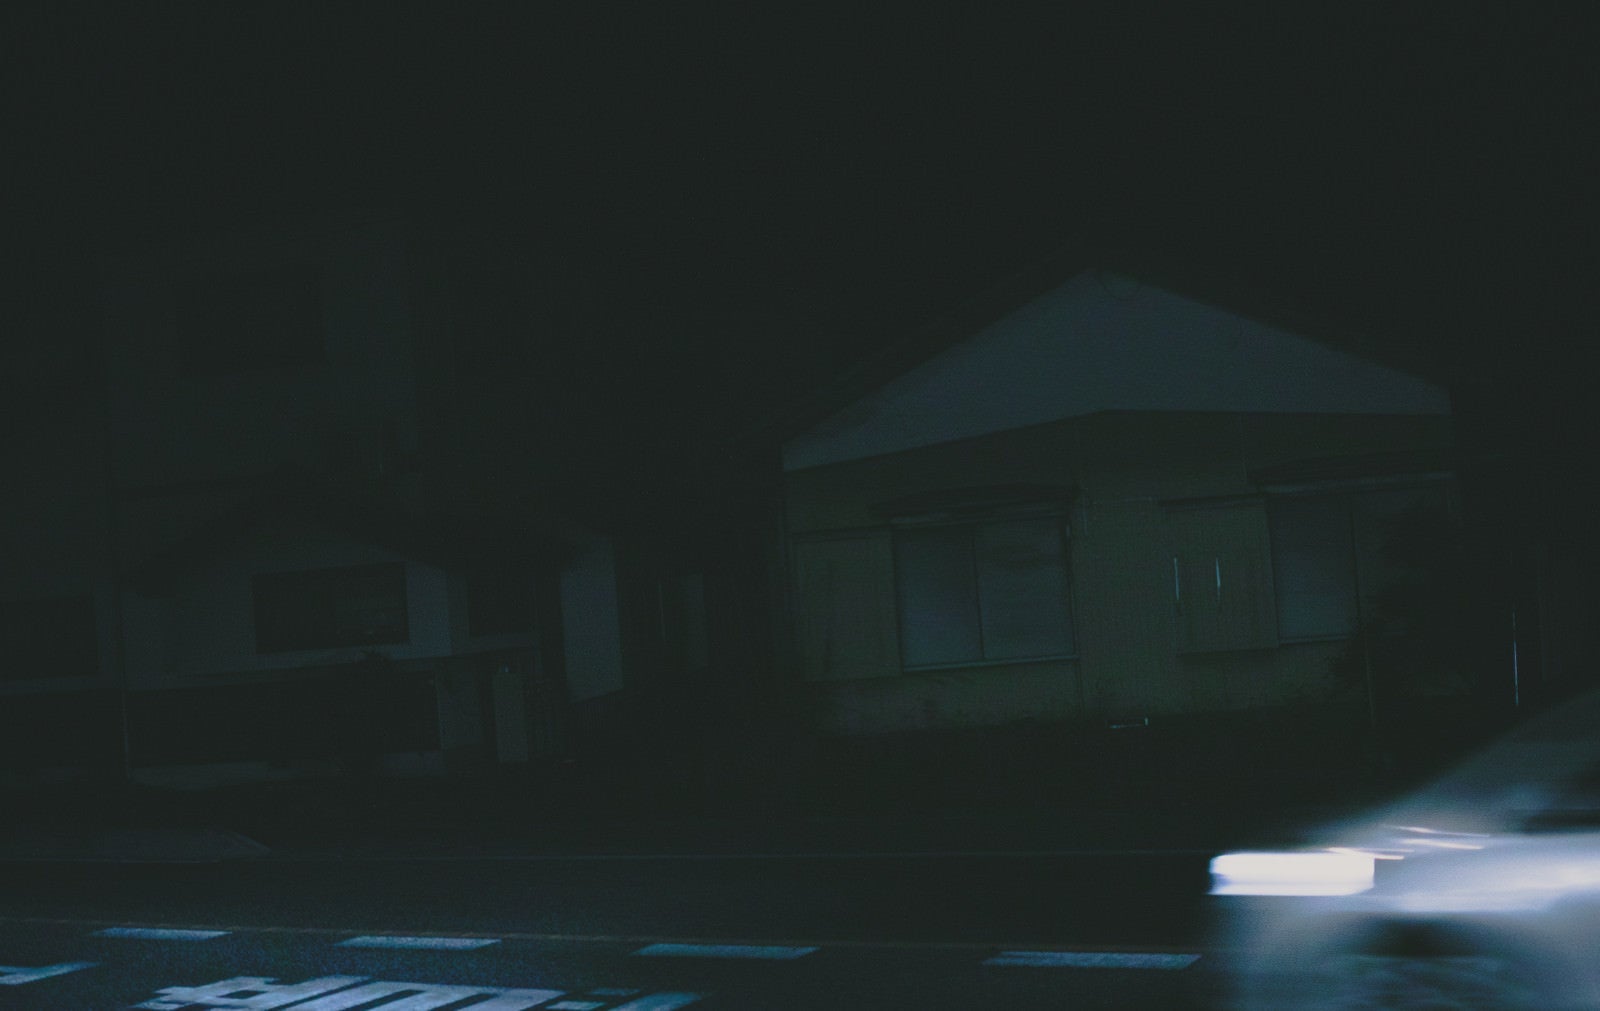 「深夜帯の民家前を走り去る車の残像」の写真